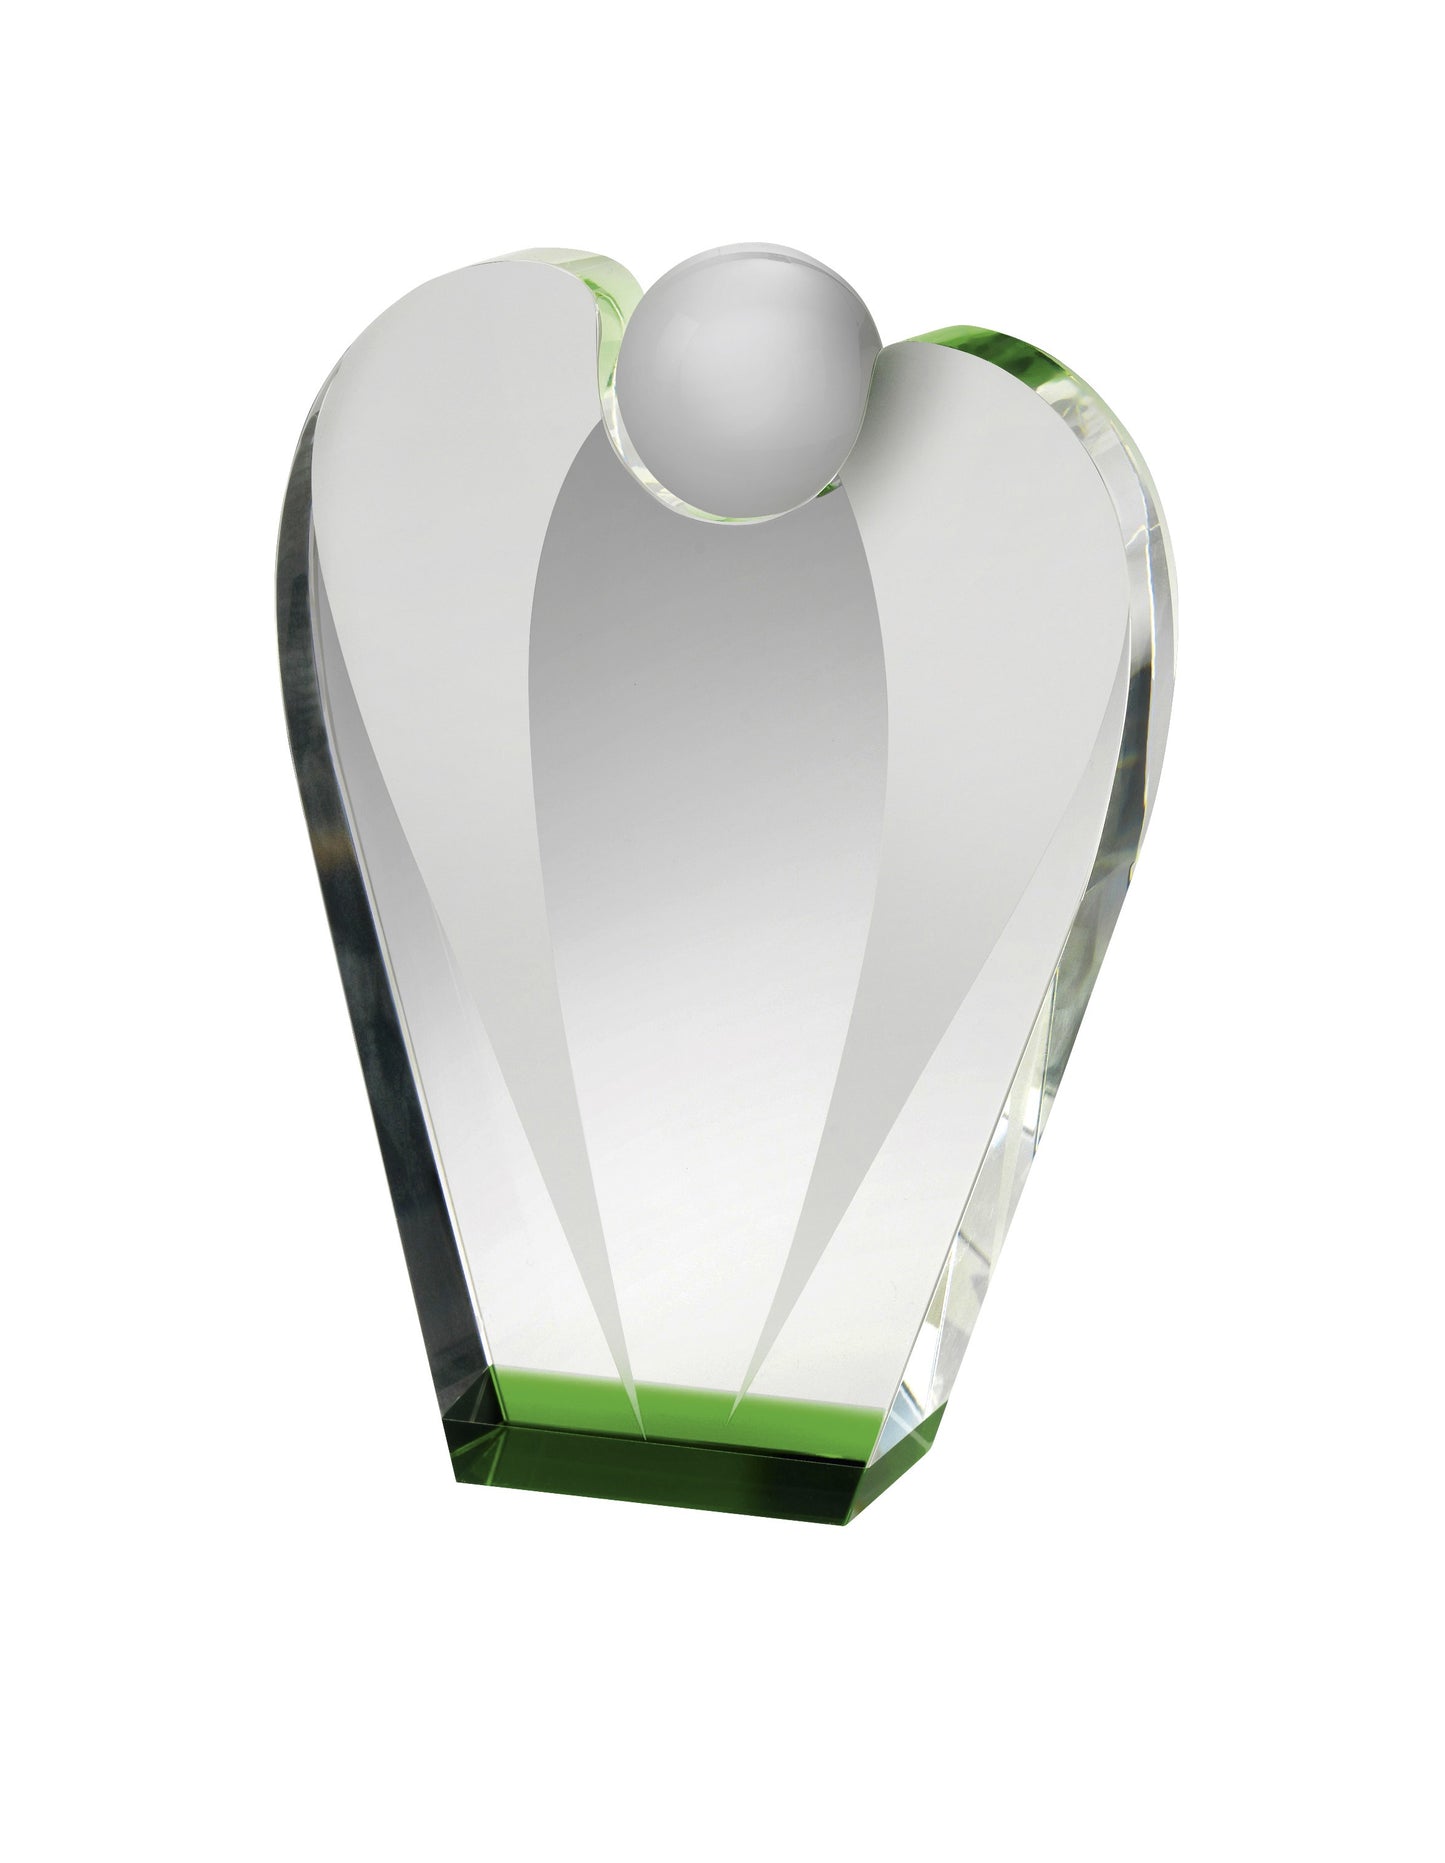 LG 21cm Crystal Award Boxed